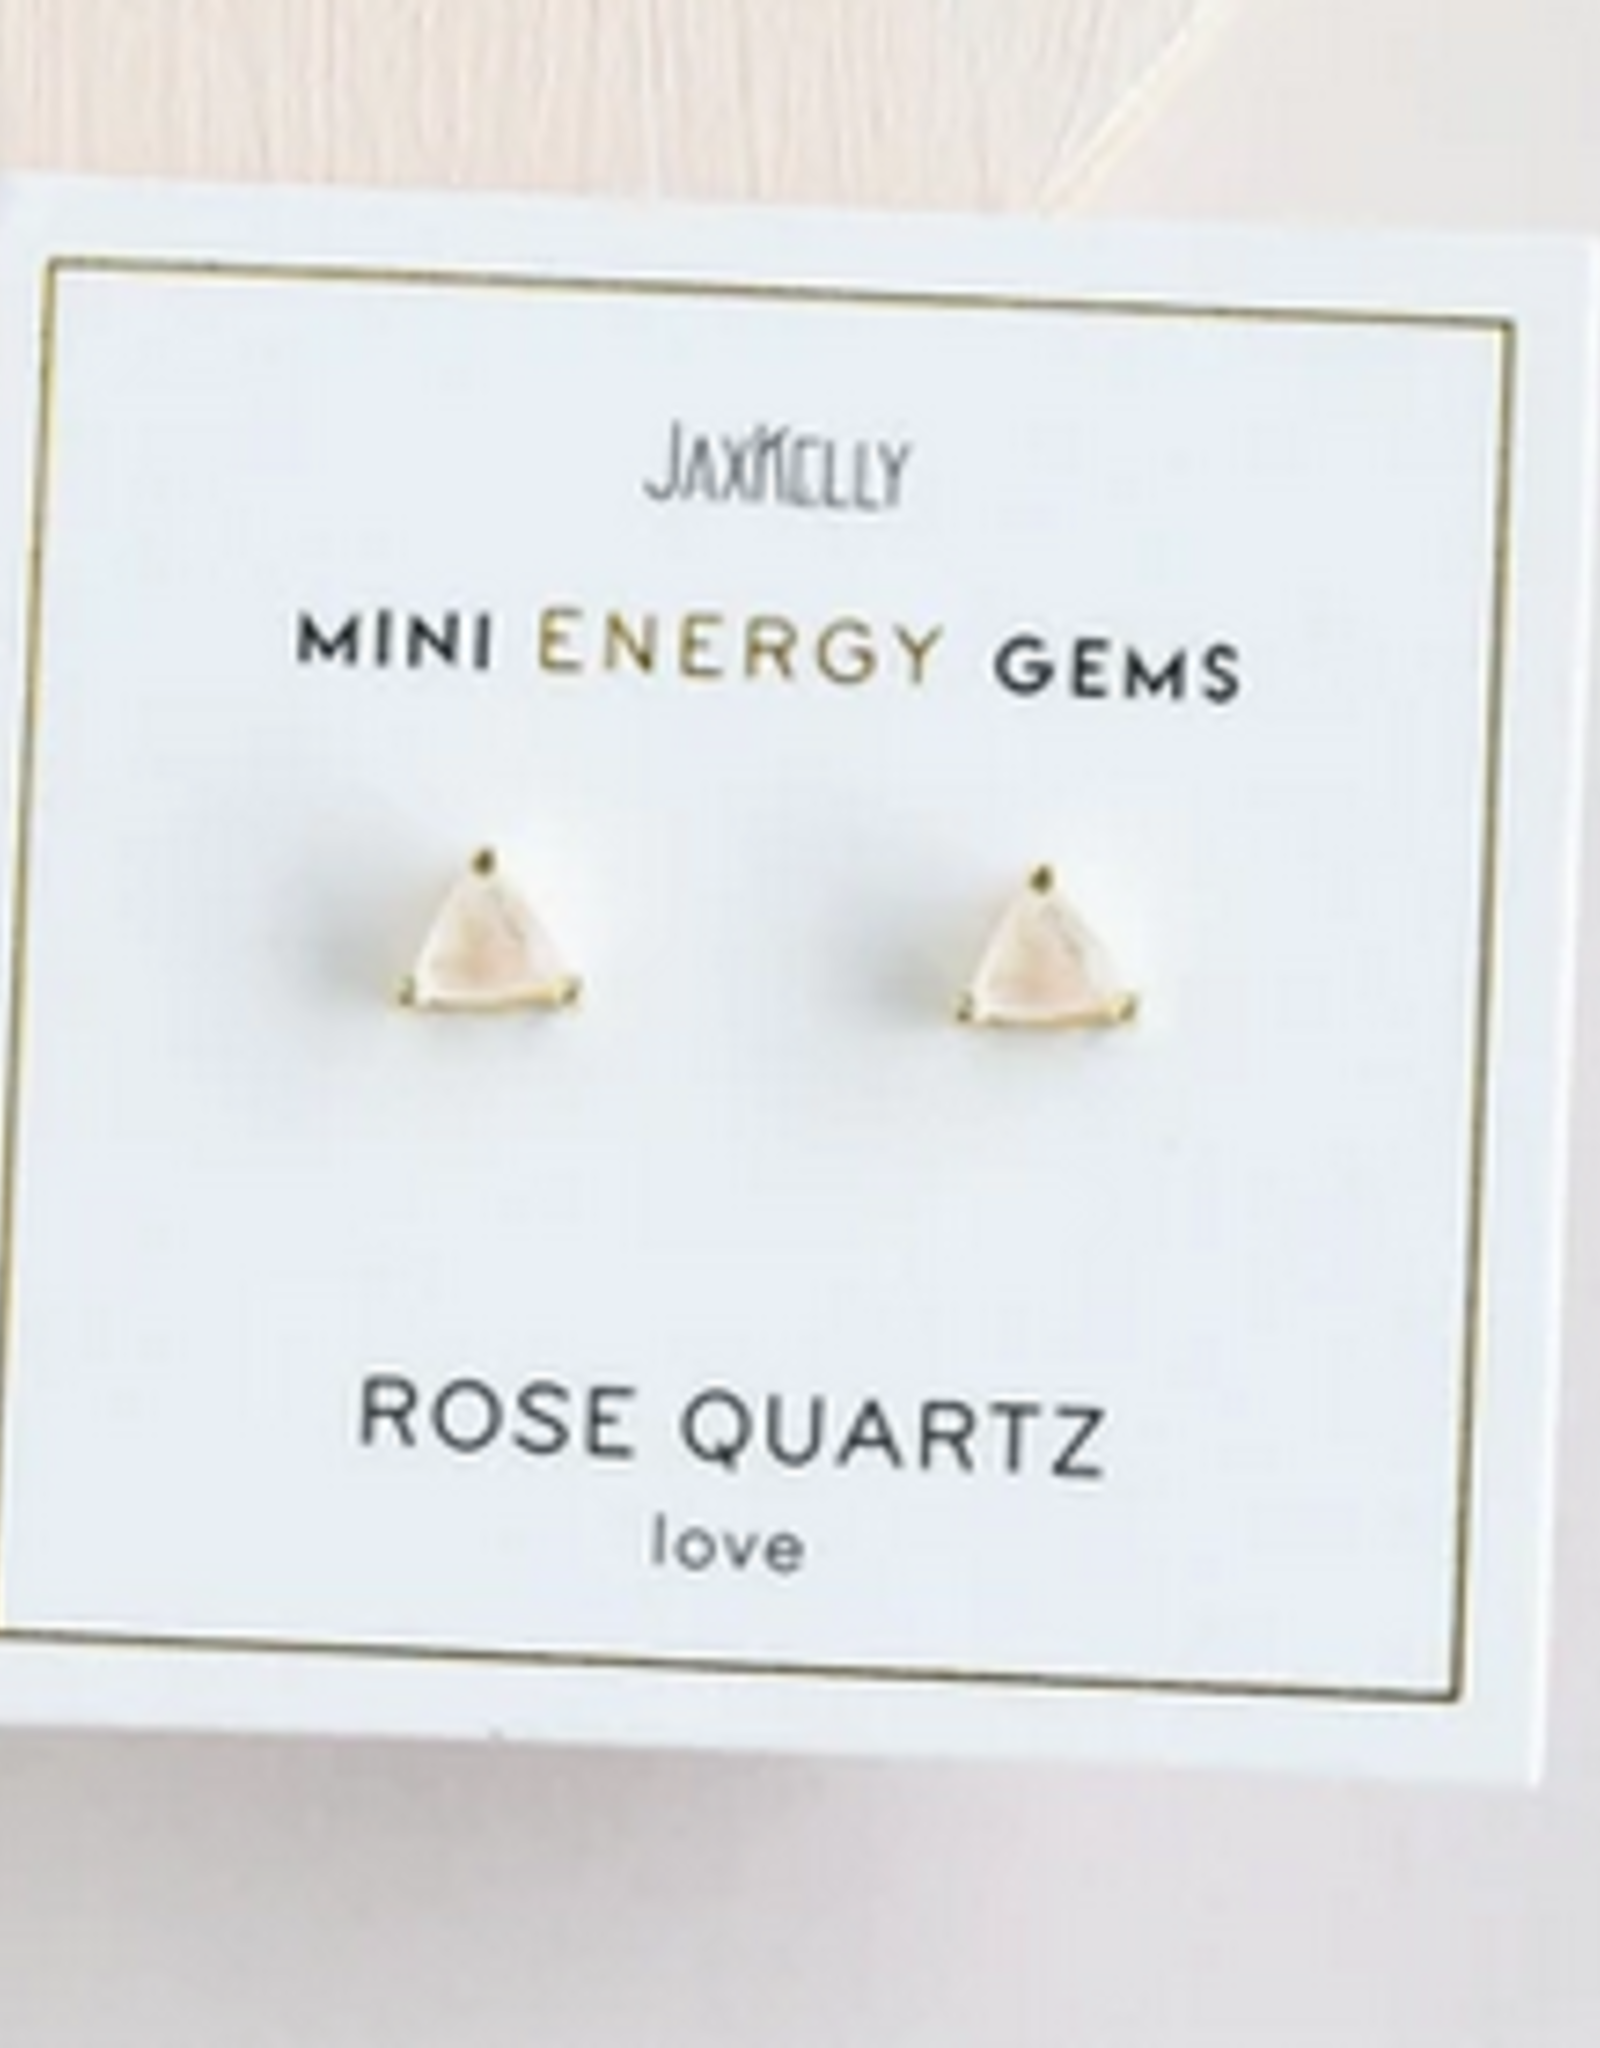 Mini Energy Gem Earrings - Rose Quartz